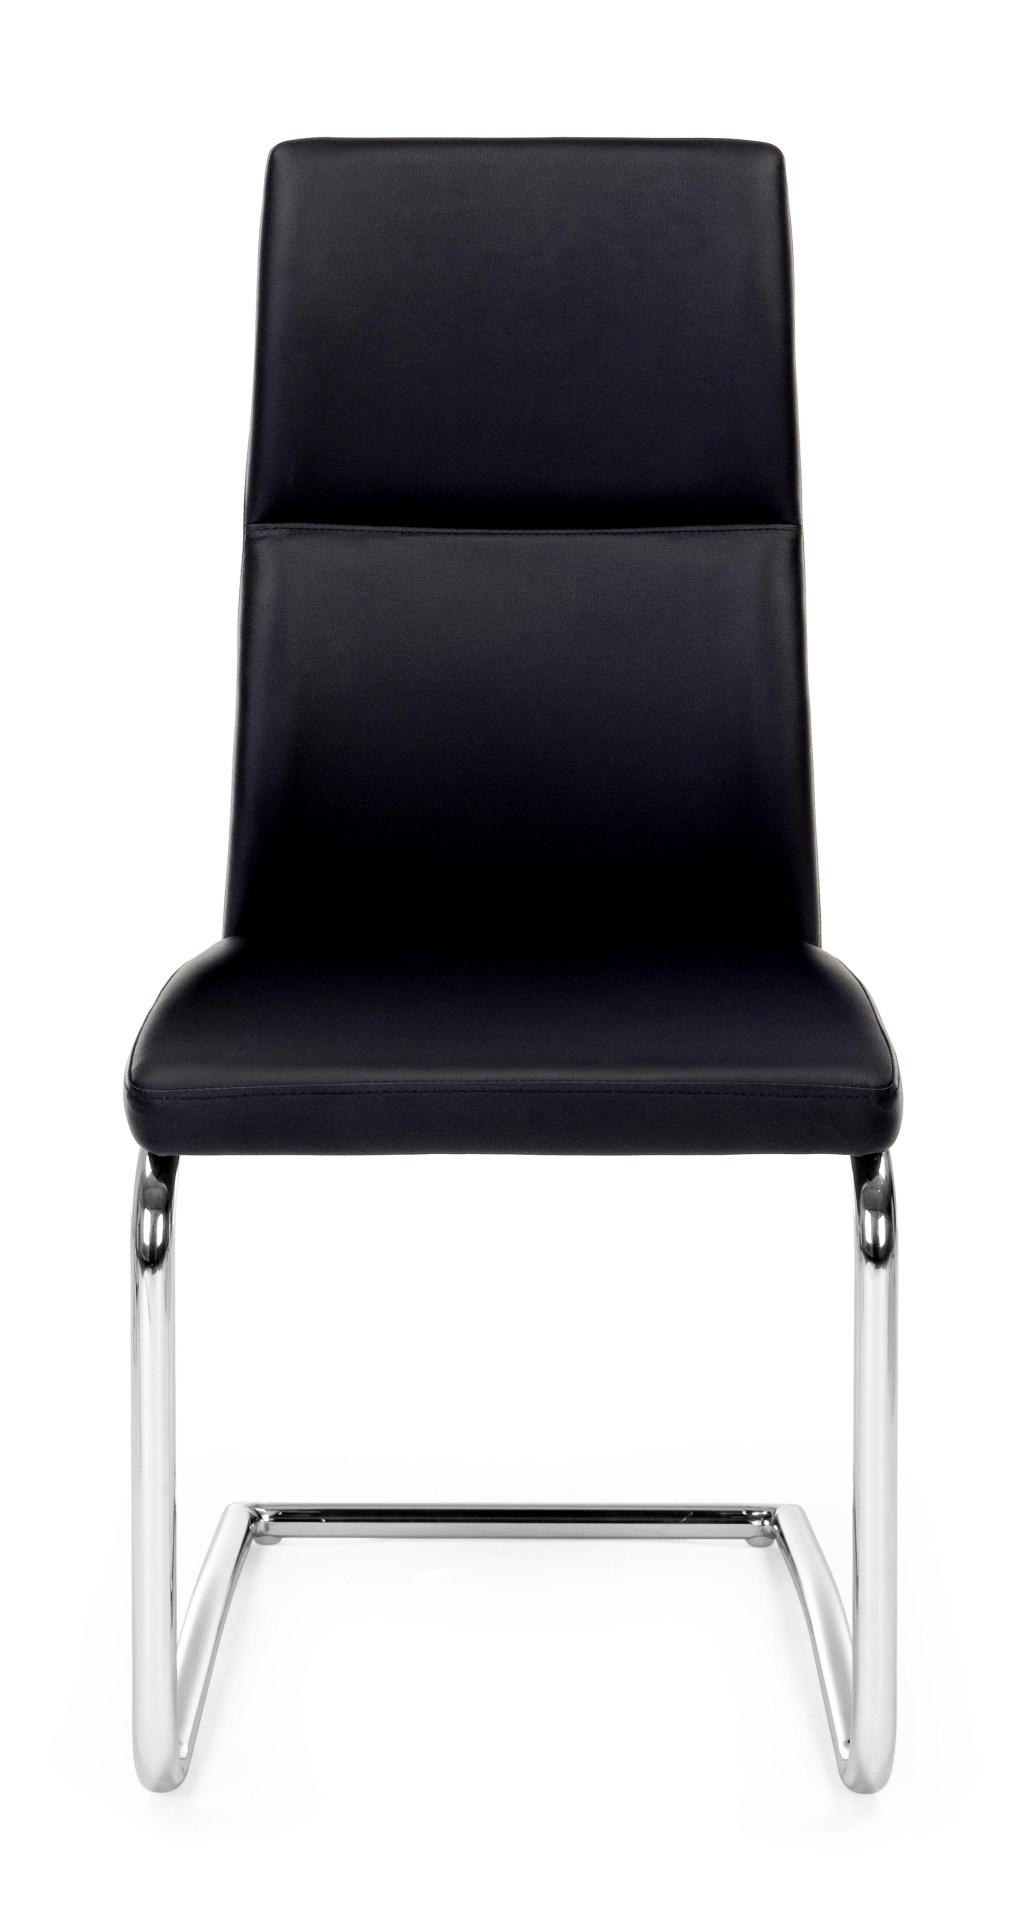 Der Esszimmerstuhl Thelma überzeugt mit seinem modernem Design. Gefertigt wurde der Stuhl aus Kunstleder, welches einen schwarzen Farbton besitzt. Das Gestell ist aus Metall und ist Silber. Die Sitzhöhe beträgt 47 cm.